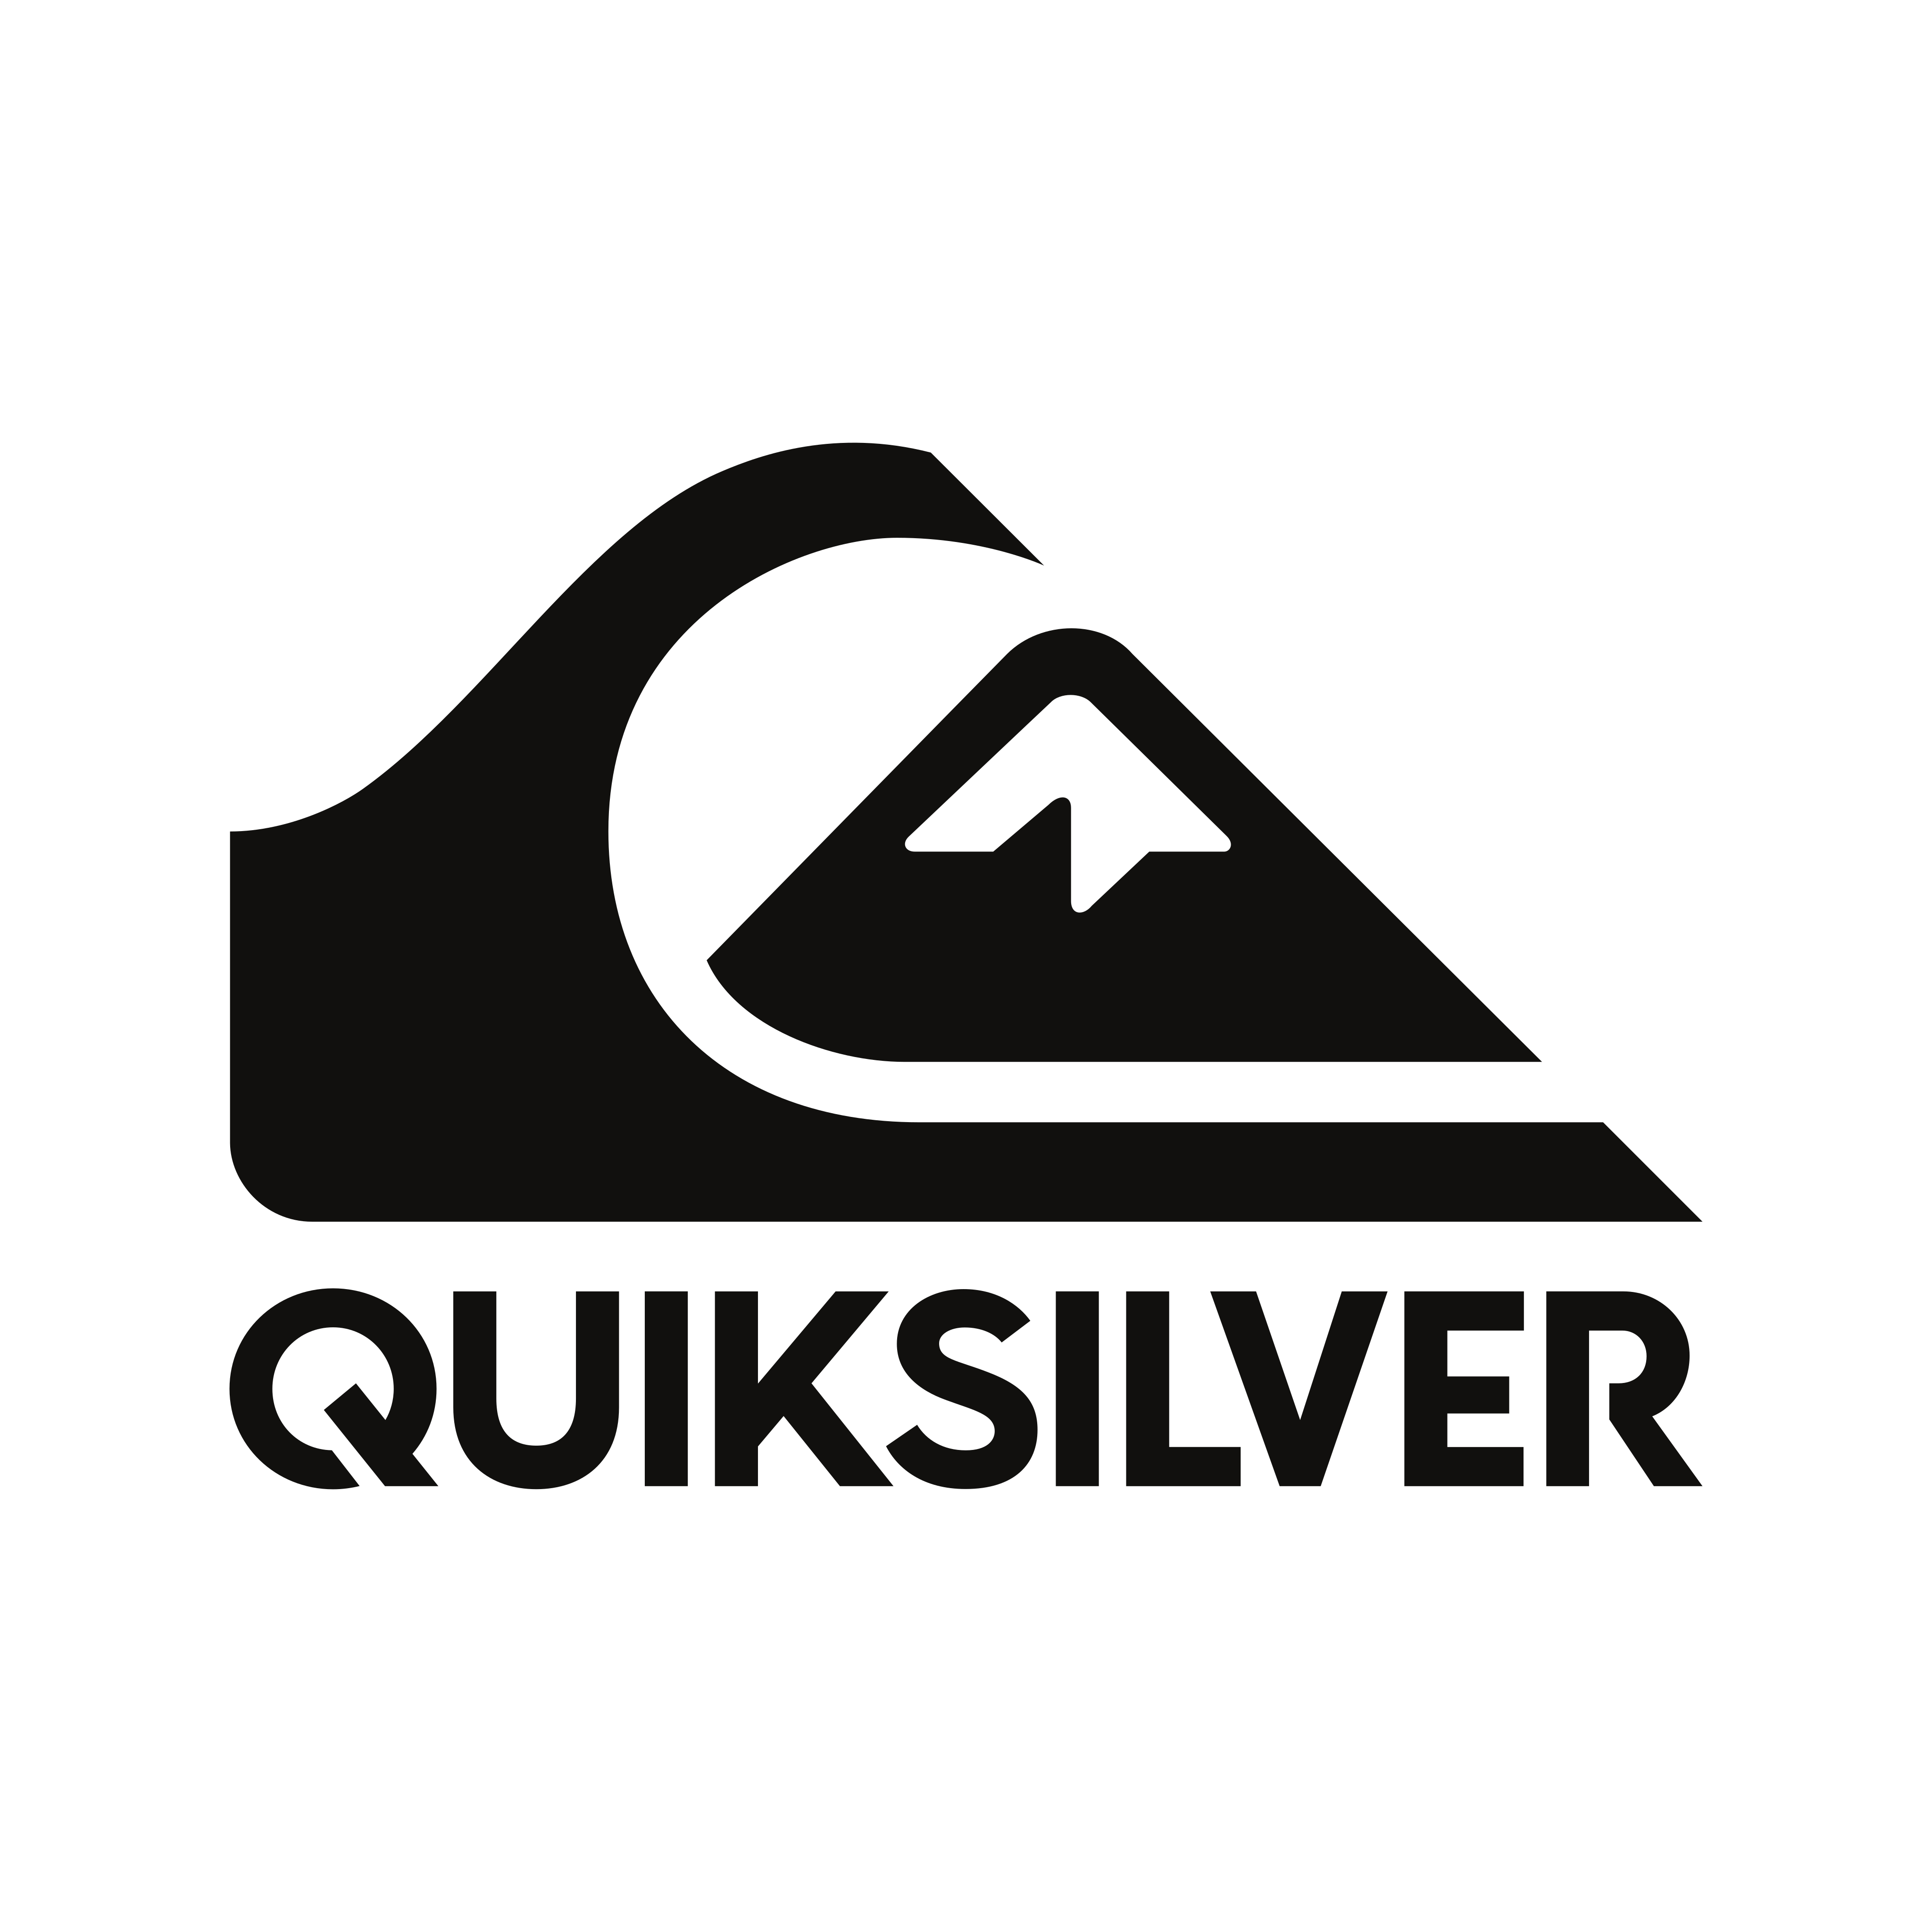 Quiksilver Transparent Images